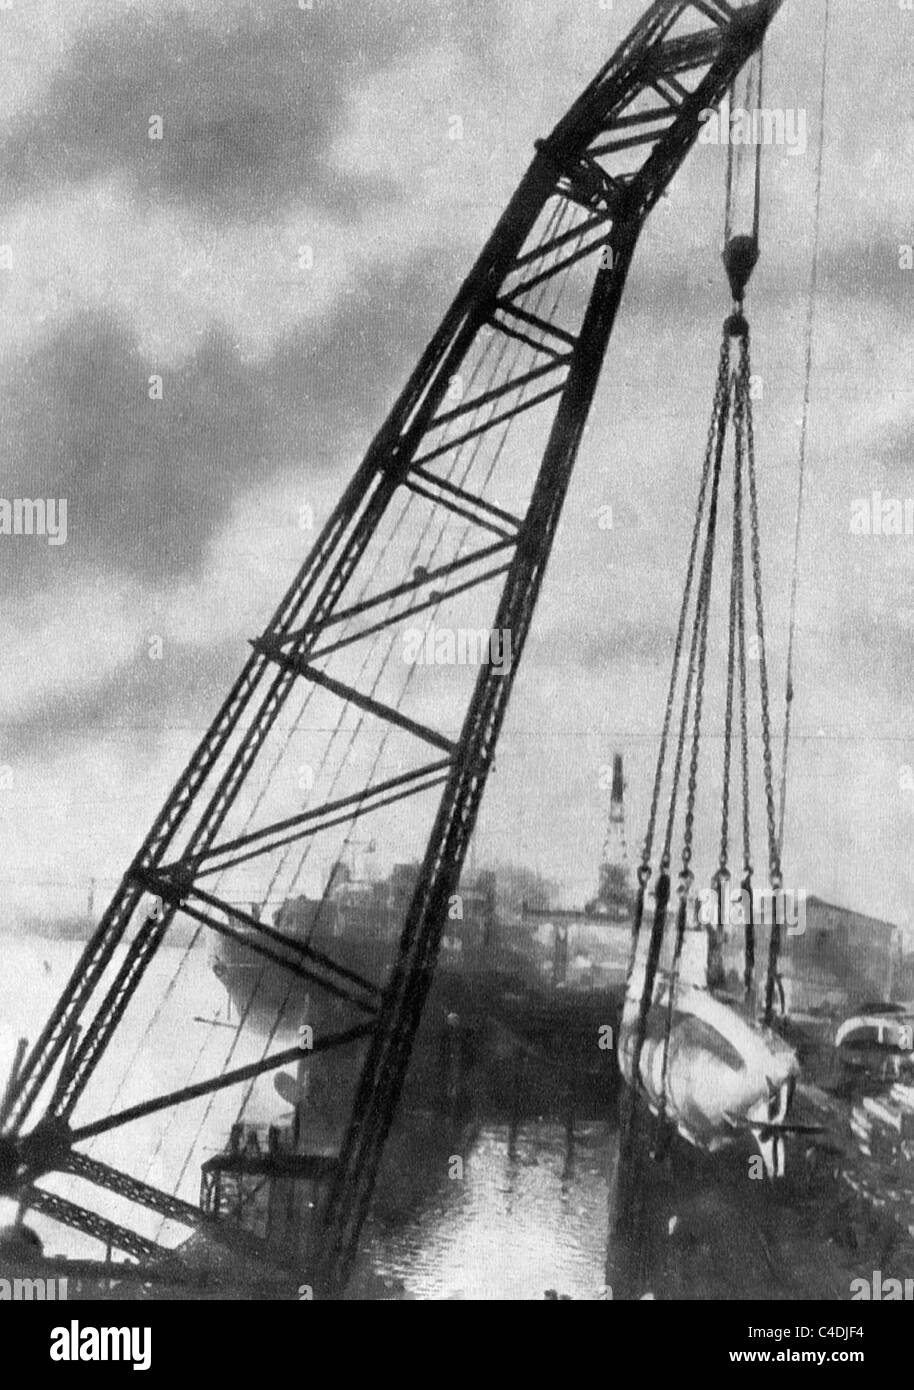 German U voile d'être hissé hors de l'eau dans un chantier naval allemand pendant la Première Guerre mondiale Banque D'Images